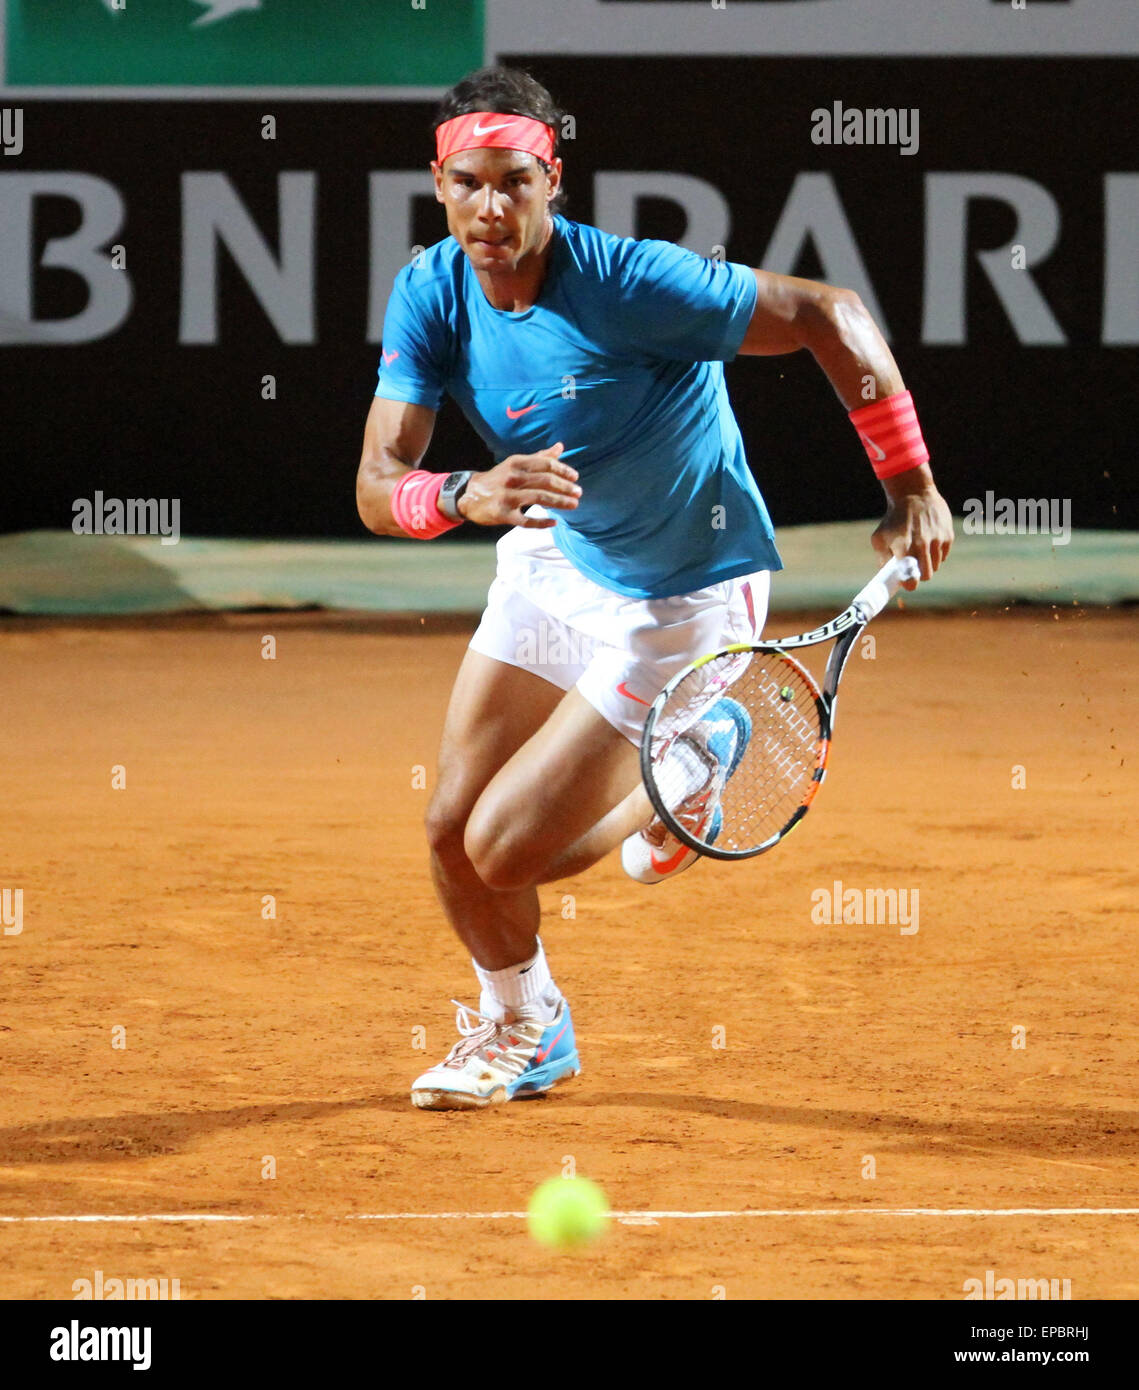 Rome, Italie. 15 mai, 2015. Les yeux de l'Espagne de Rafael Nadal la balle  à Stan Wawrinka Suisse au cours de l'Open de Tennis ATP match quart tournoi  au Foro Italico, le